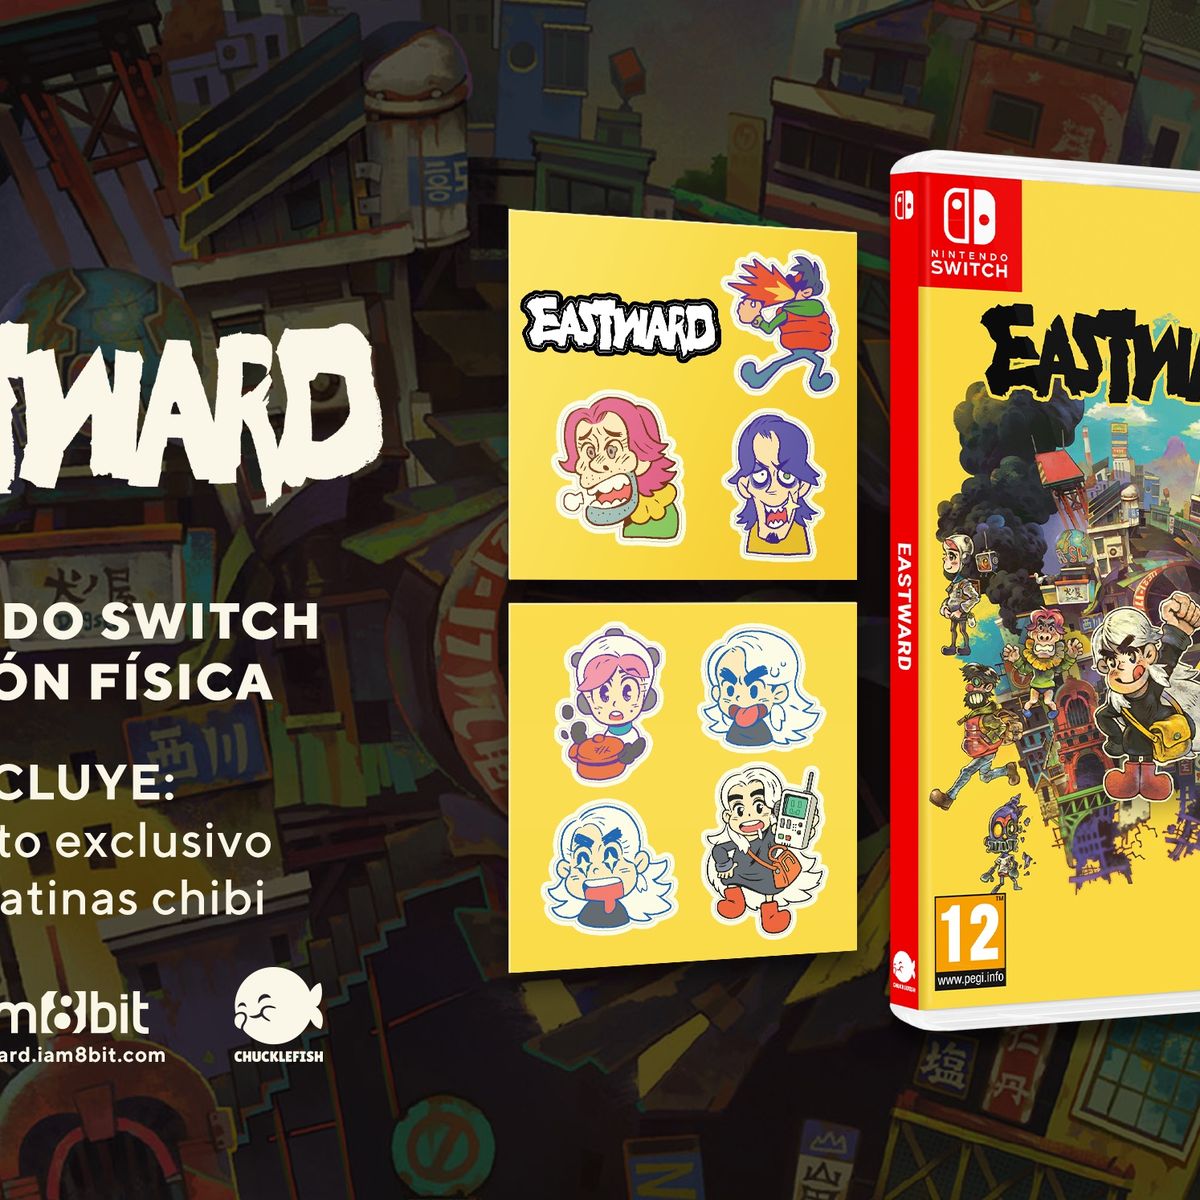 Eastward llegará en formato físico a Nintendo Switch